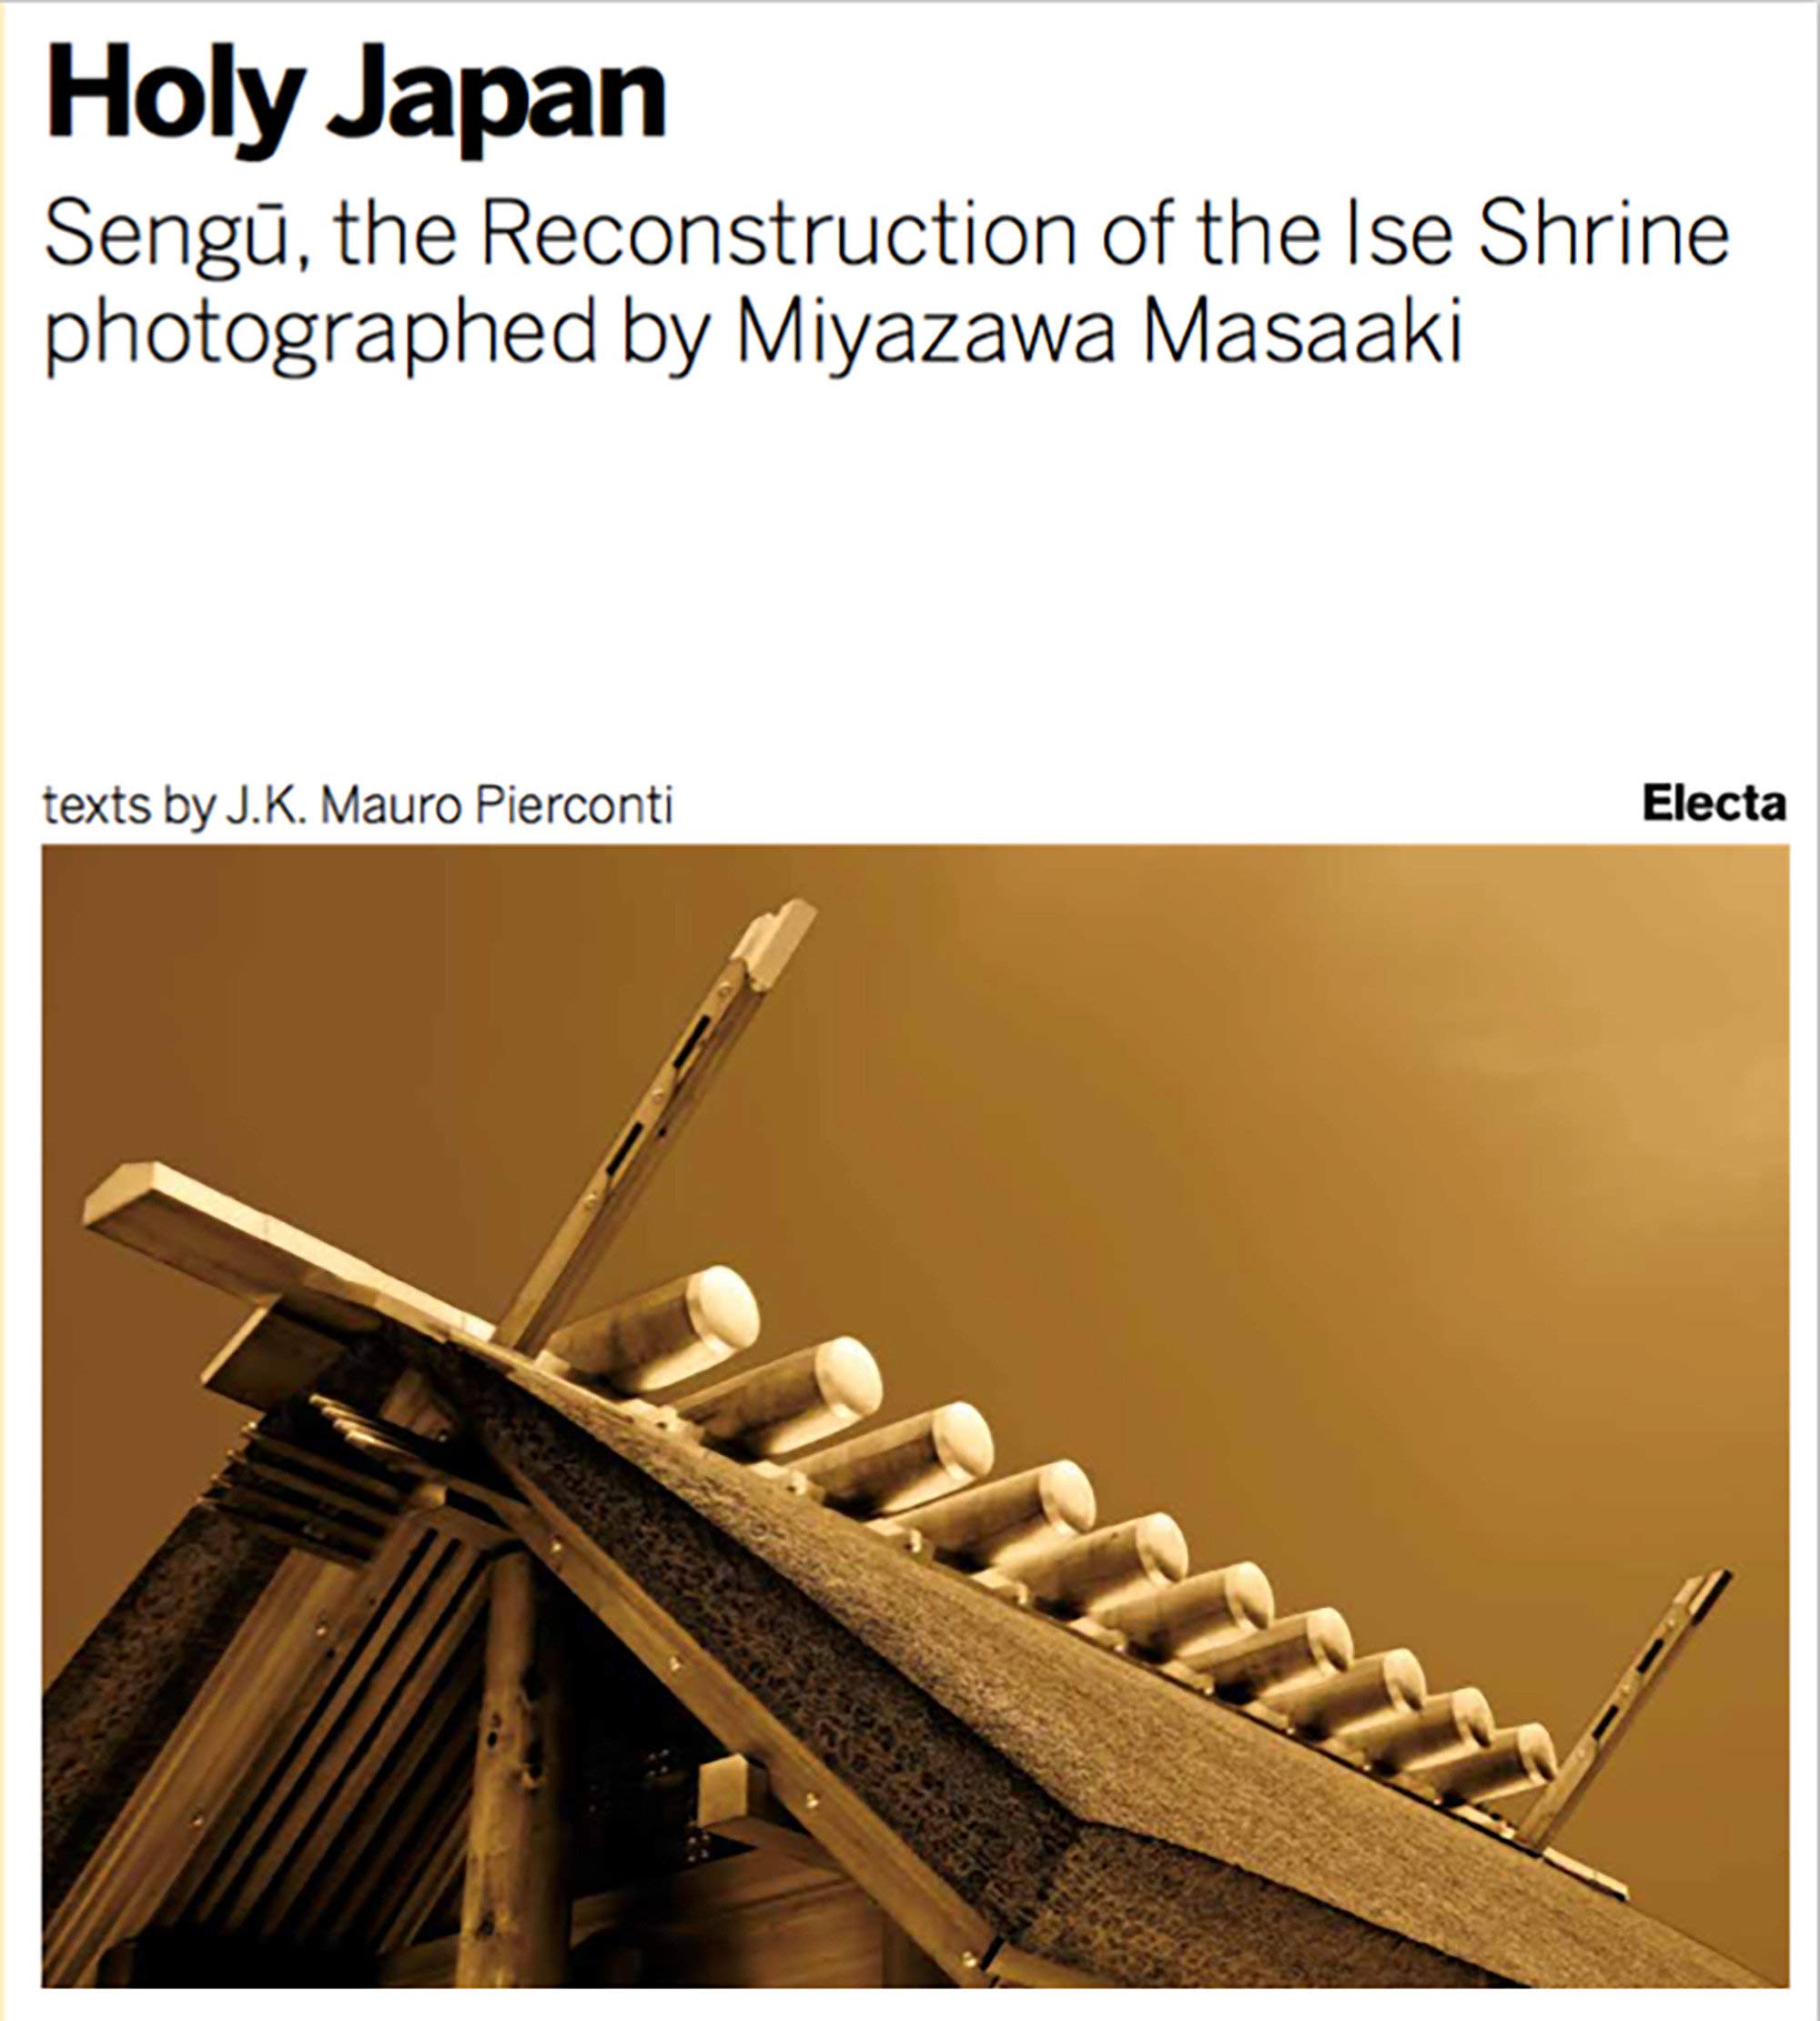 Holy Japan. Sengu: The Reconstruction of the Ise Shrine photographed by Miyazawa Masaaki